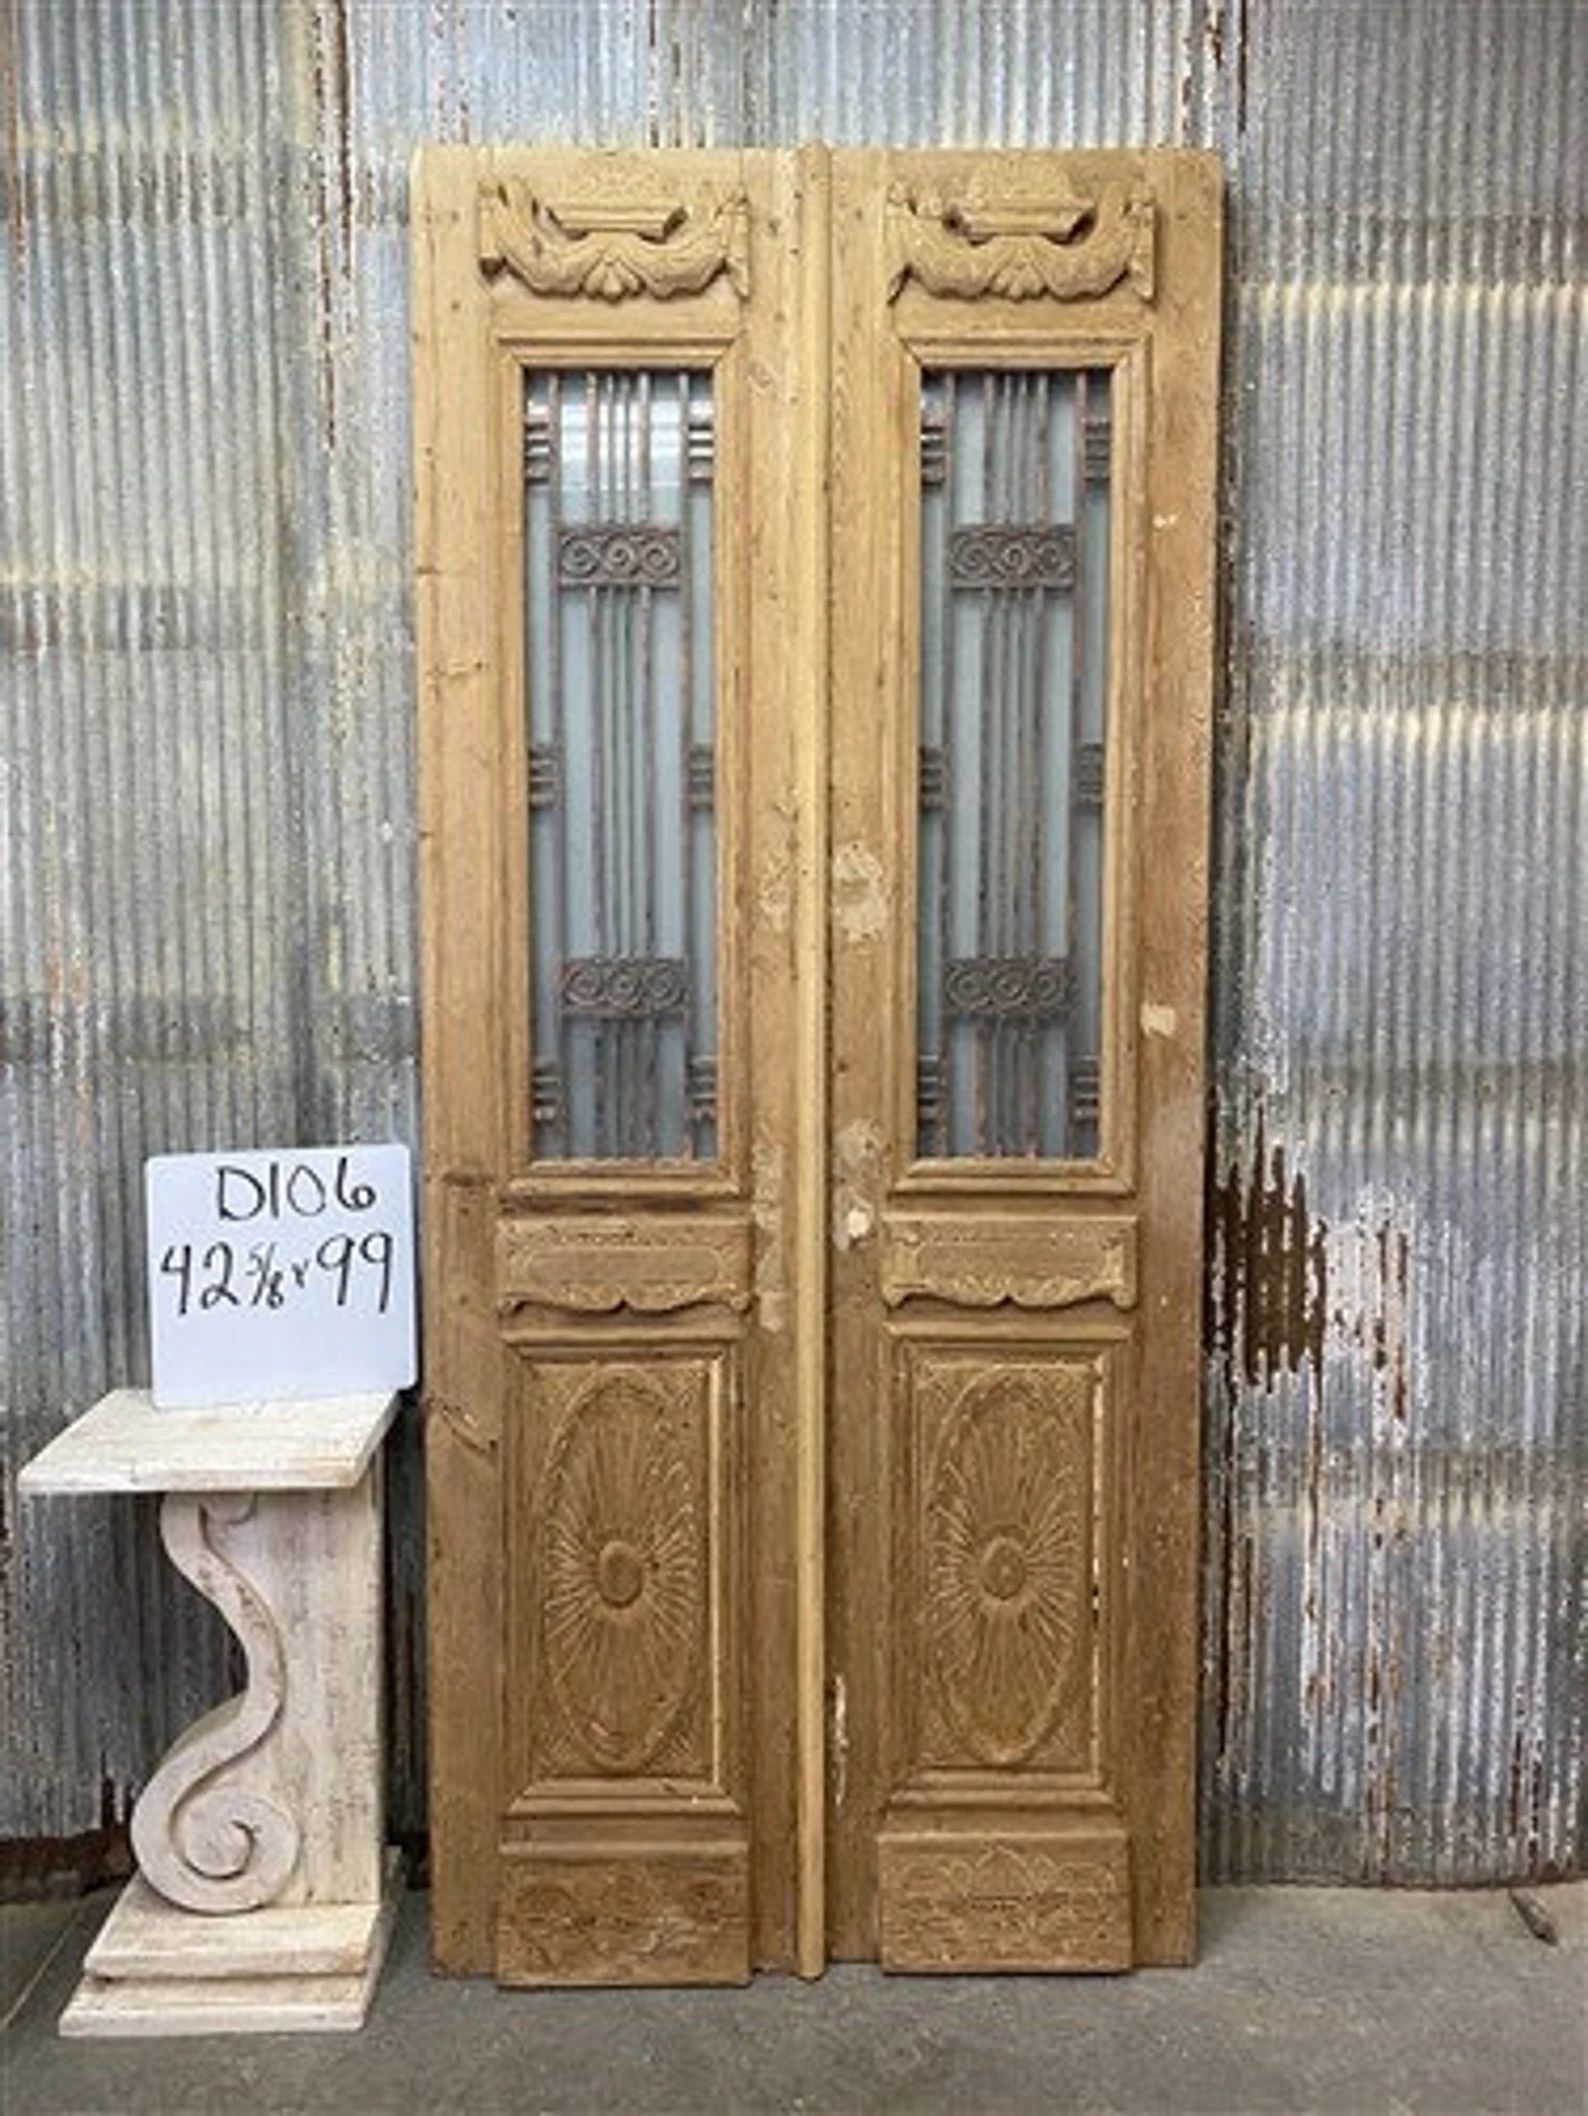 Antique French Double Doors 42.5x99 Wood Iron Doors, European Doors D106, Antique Doors, Pantry D... | Etsy (US)